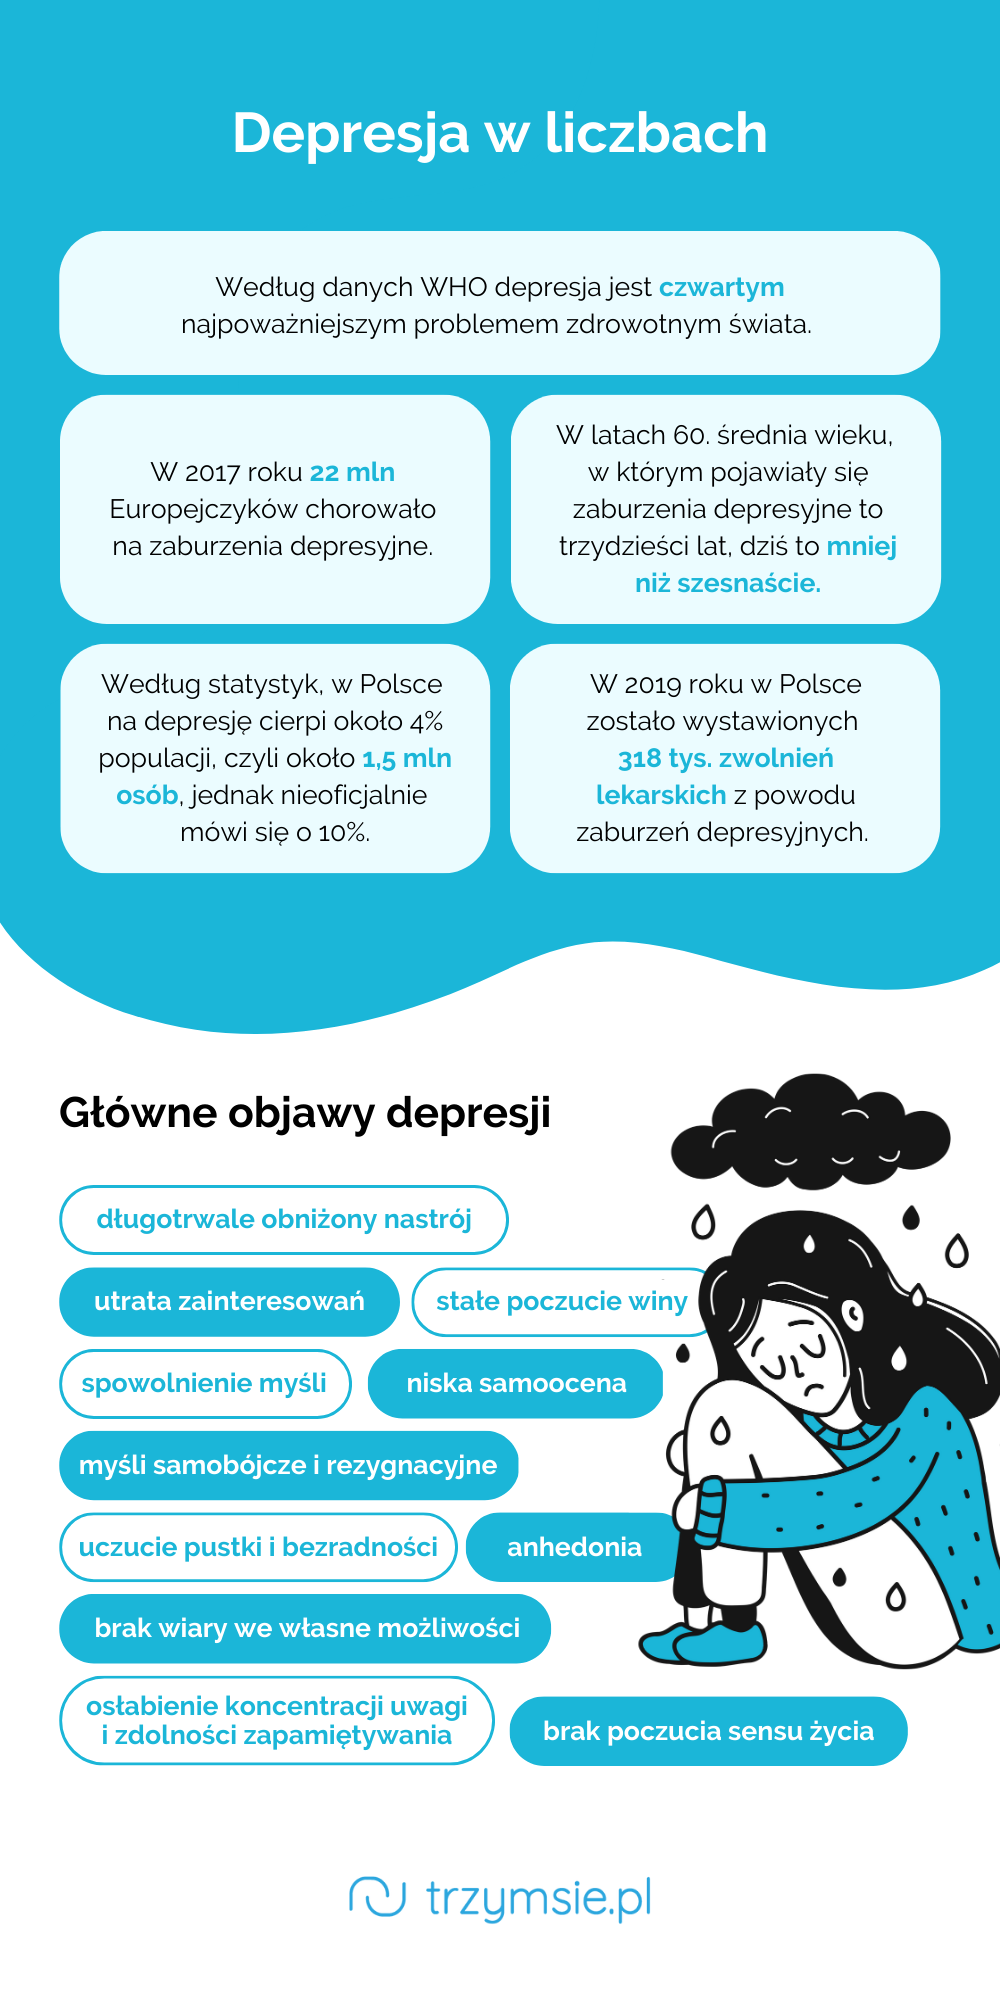 depresja w liczbach infografika